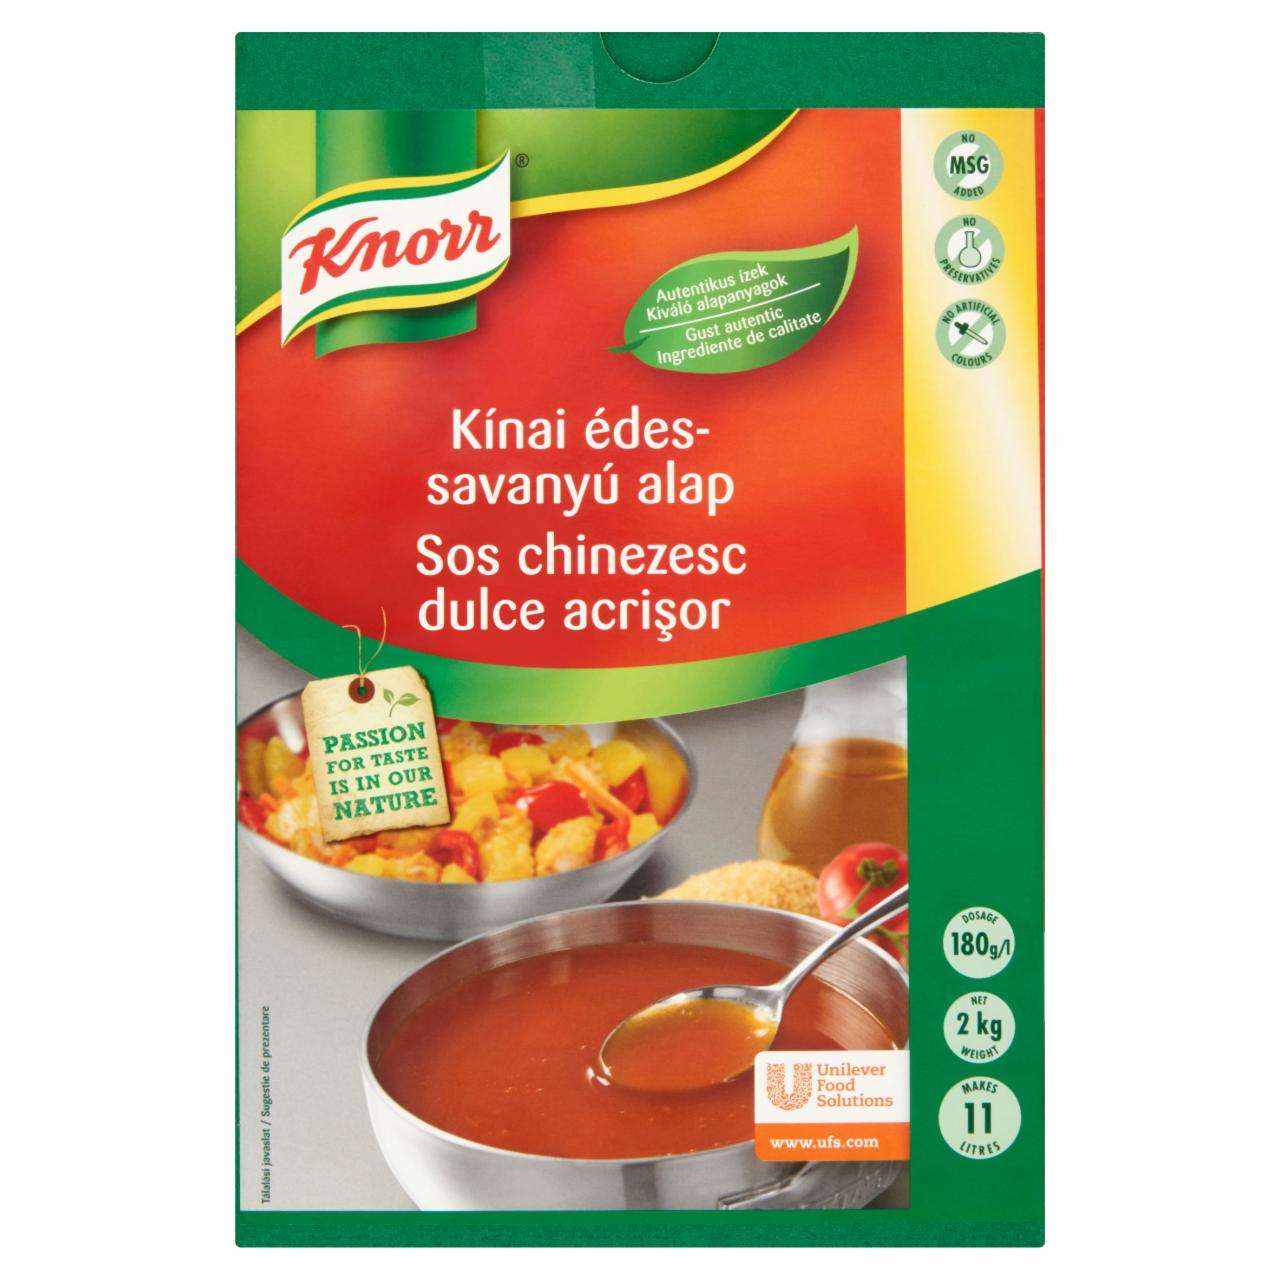 Képek - Knorr kínai édes-savanyú alap 2 kg